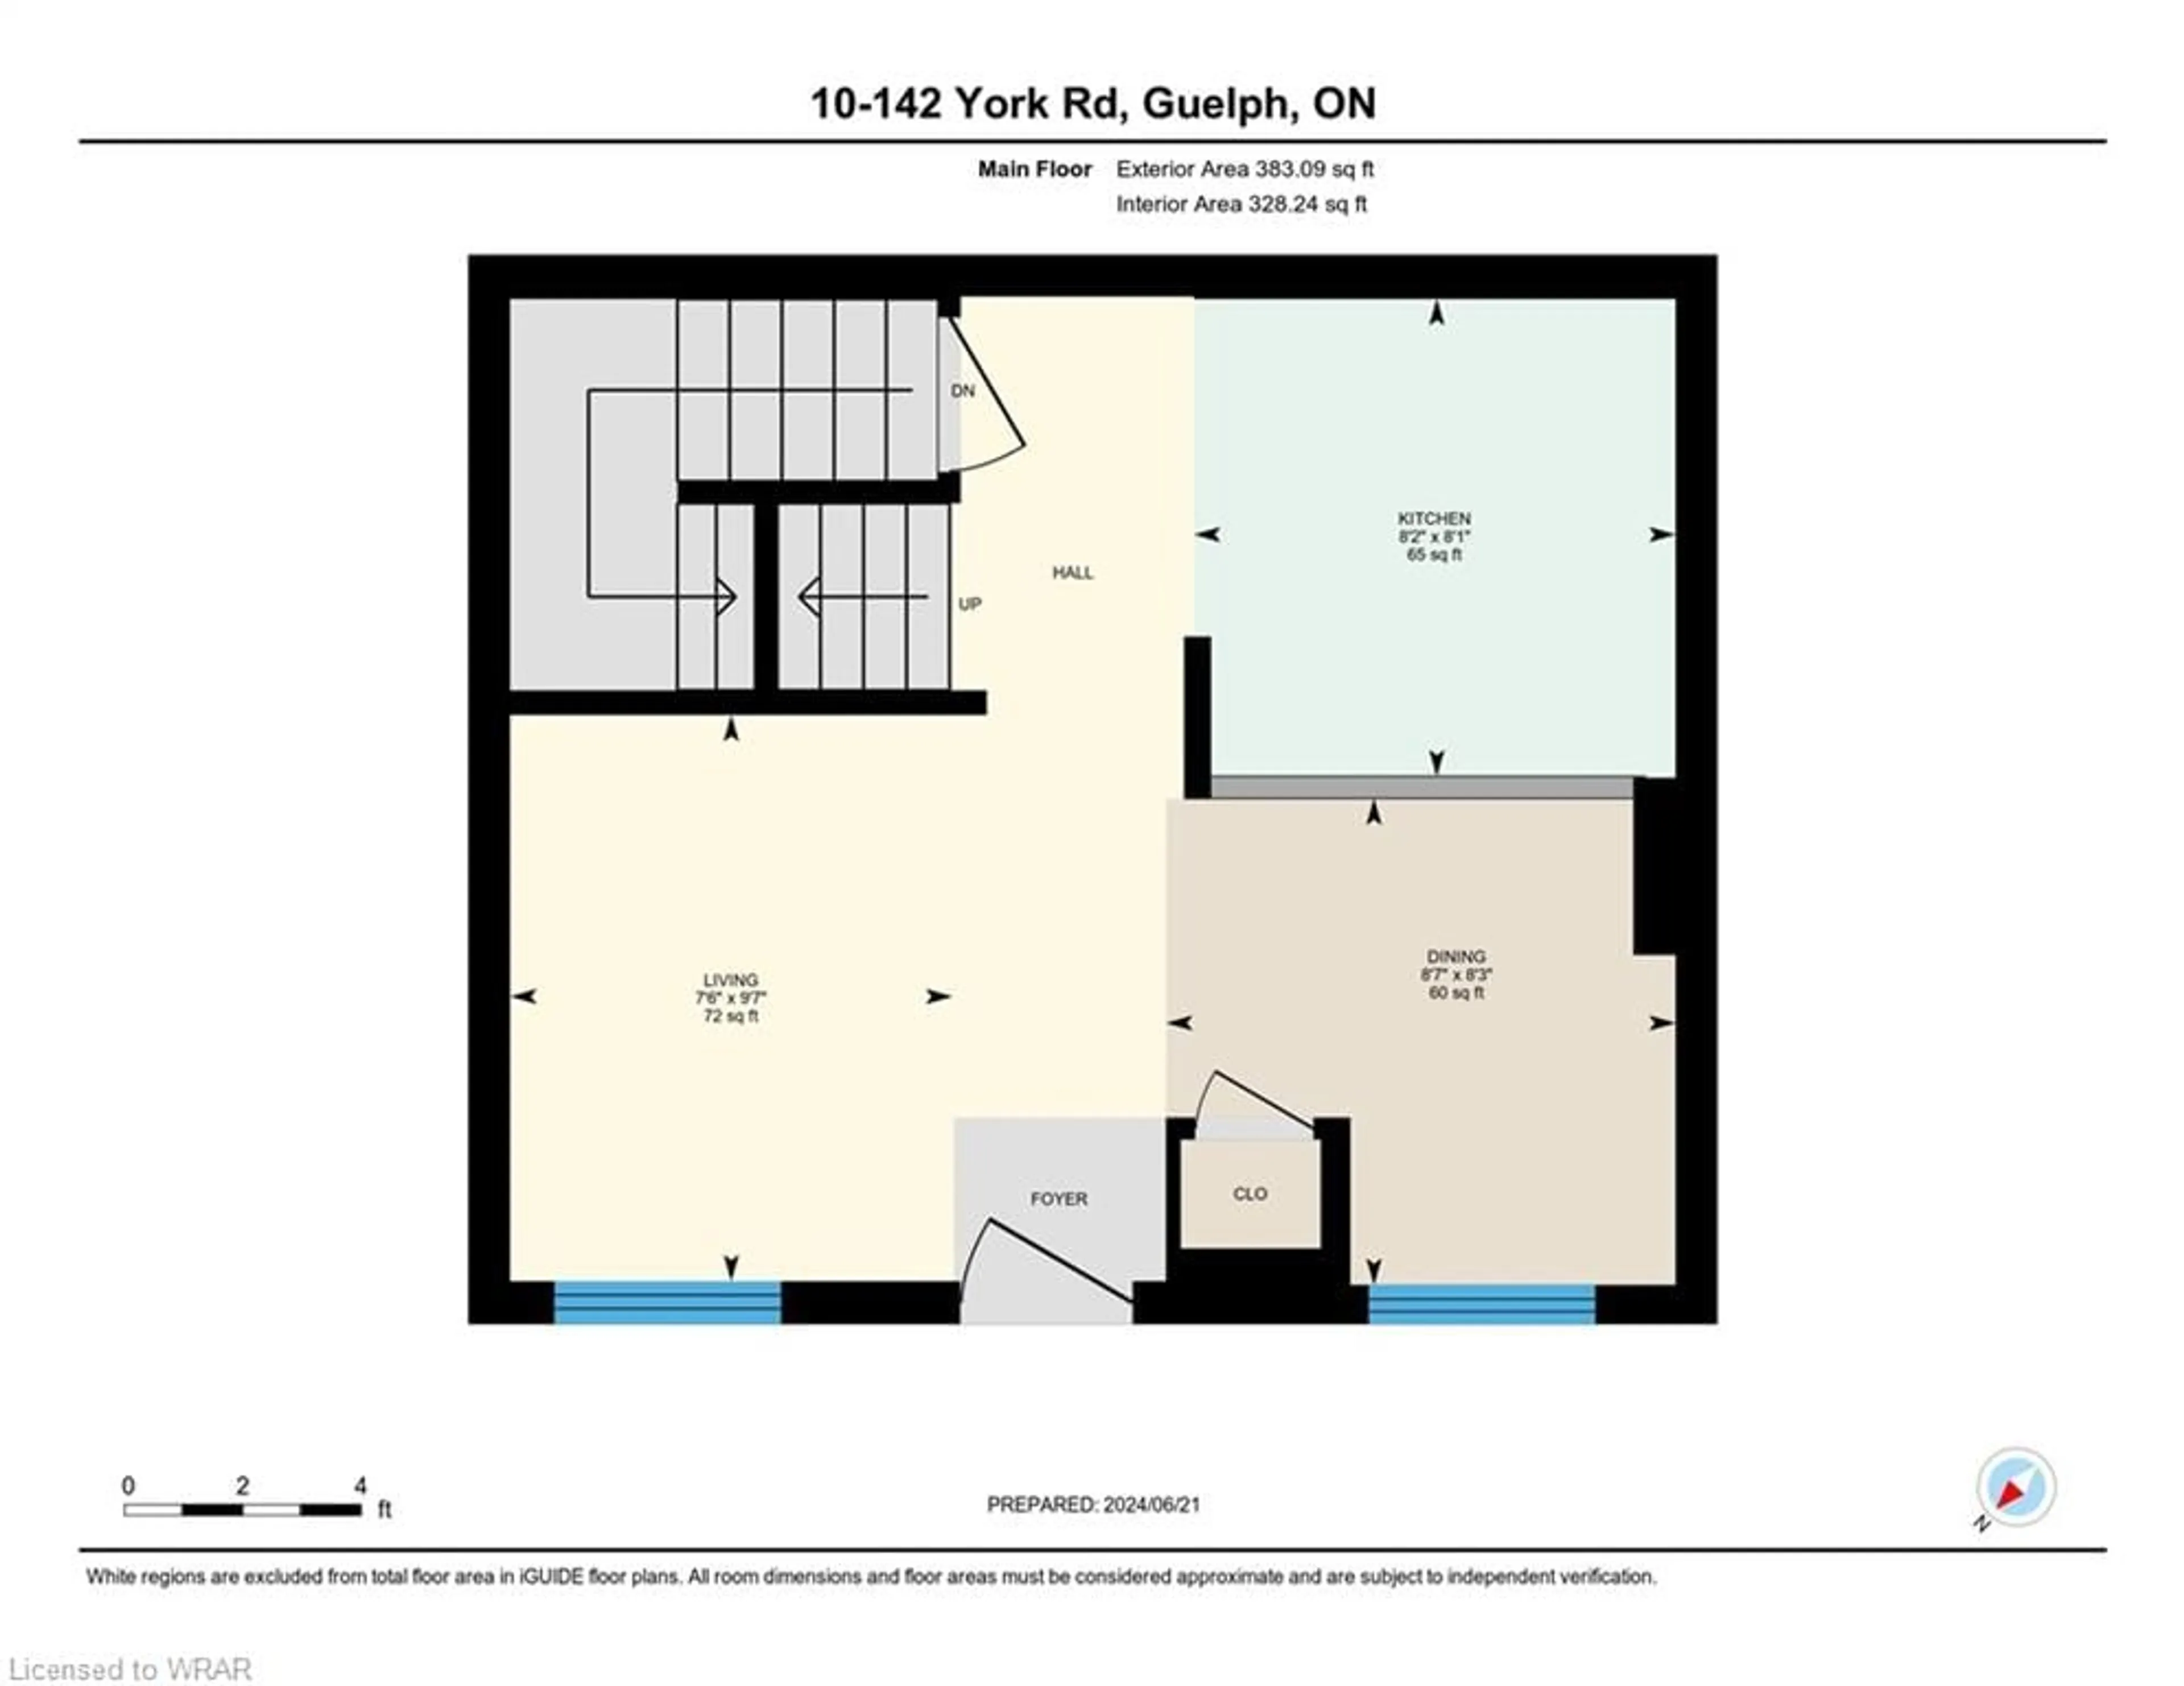 Floor plan for 142 York Rd #10, Guelph Ontario N1E 3E9